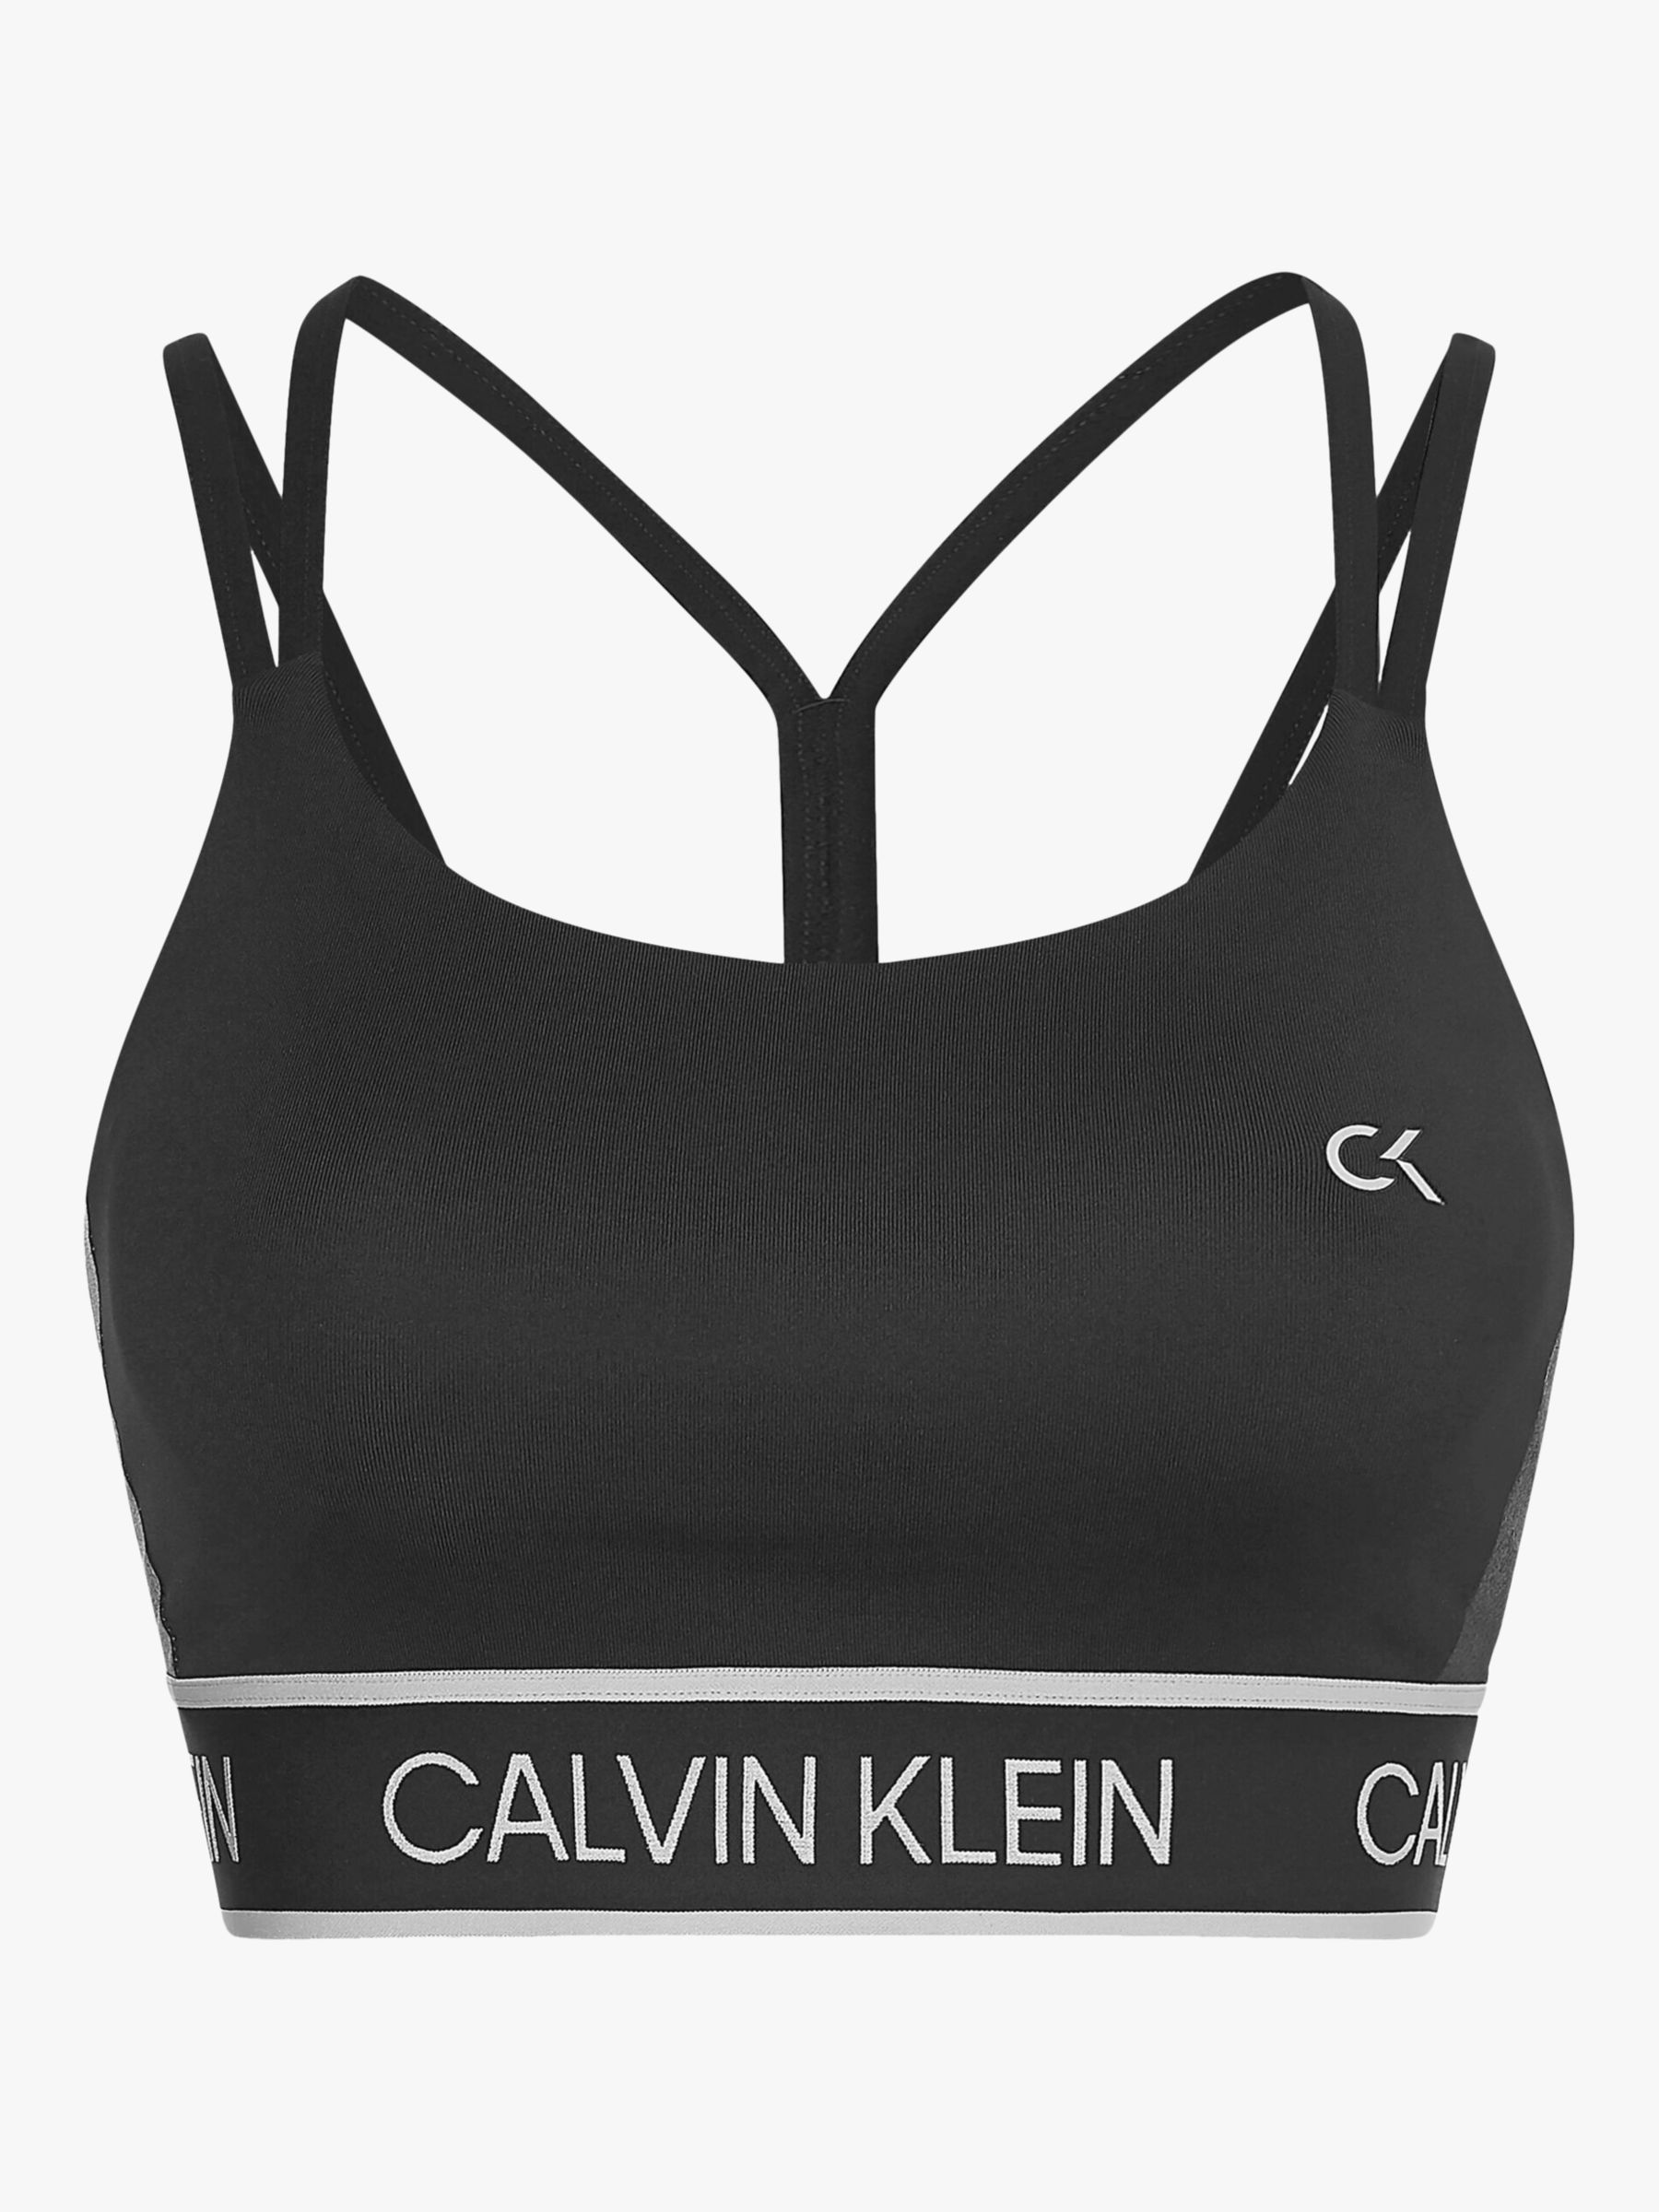 Calvin Klein Performance Low Support Sports Bra, CK Black